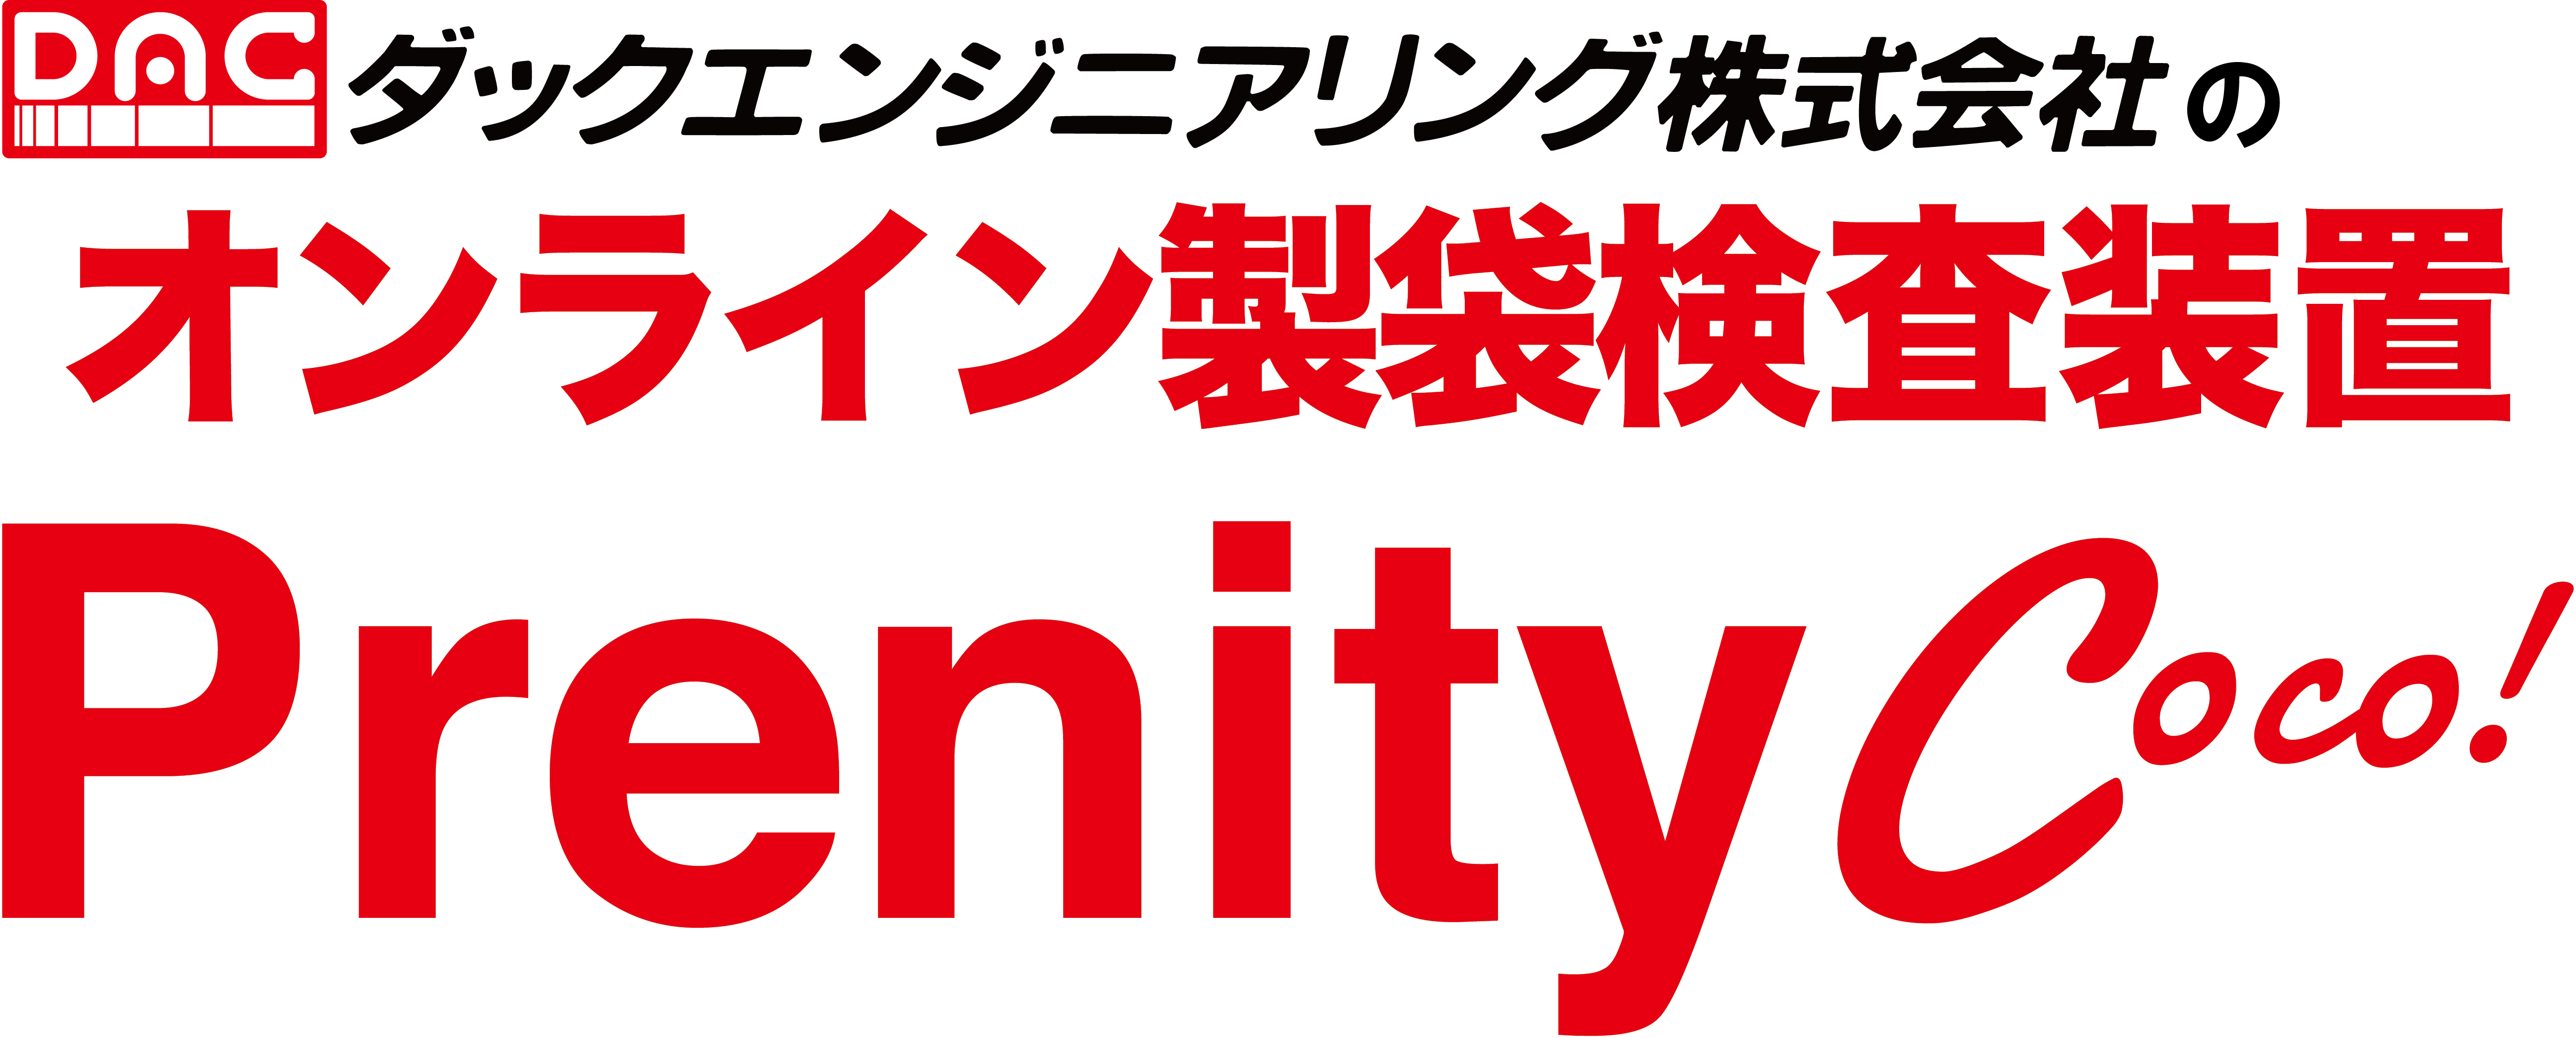 PrenityCoco_logo